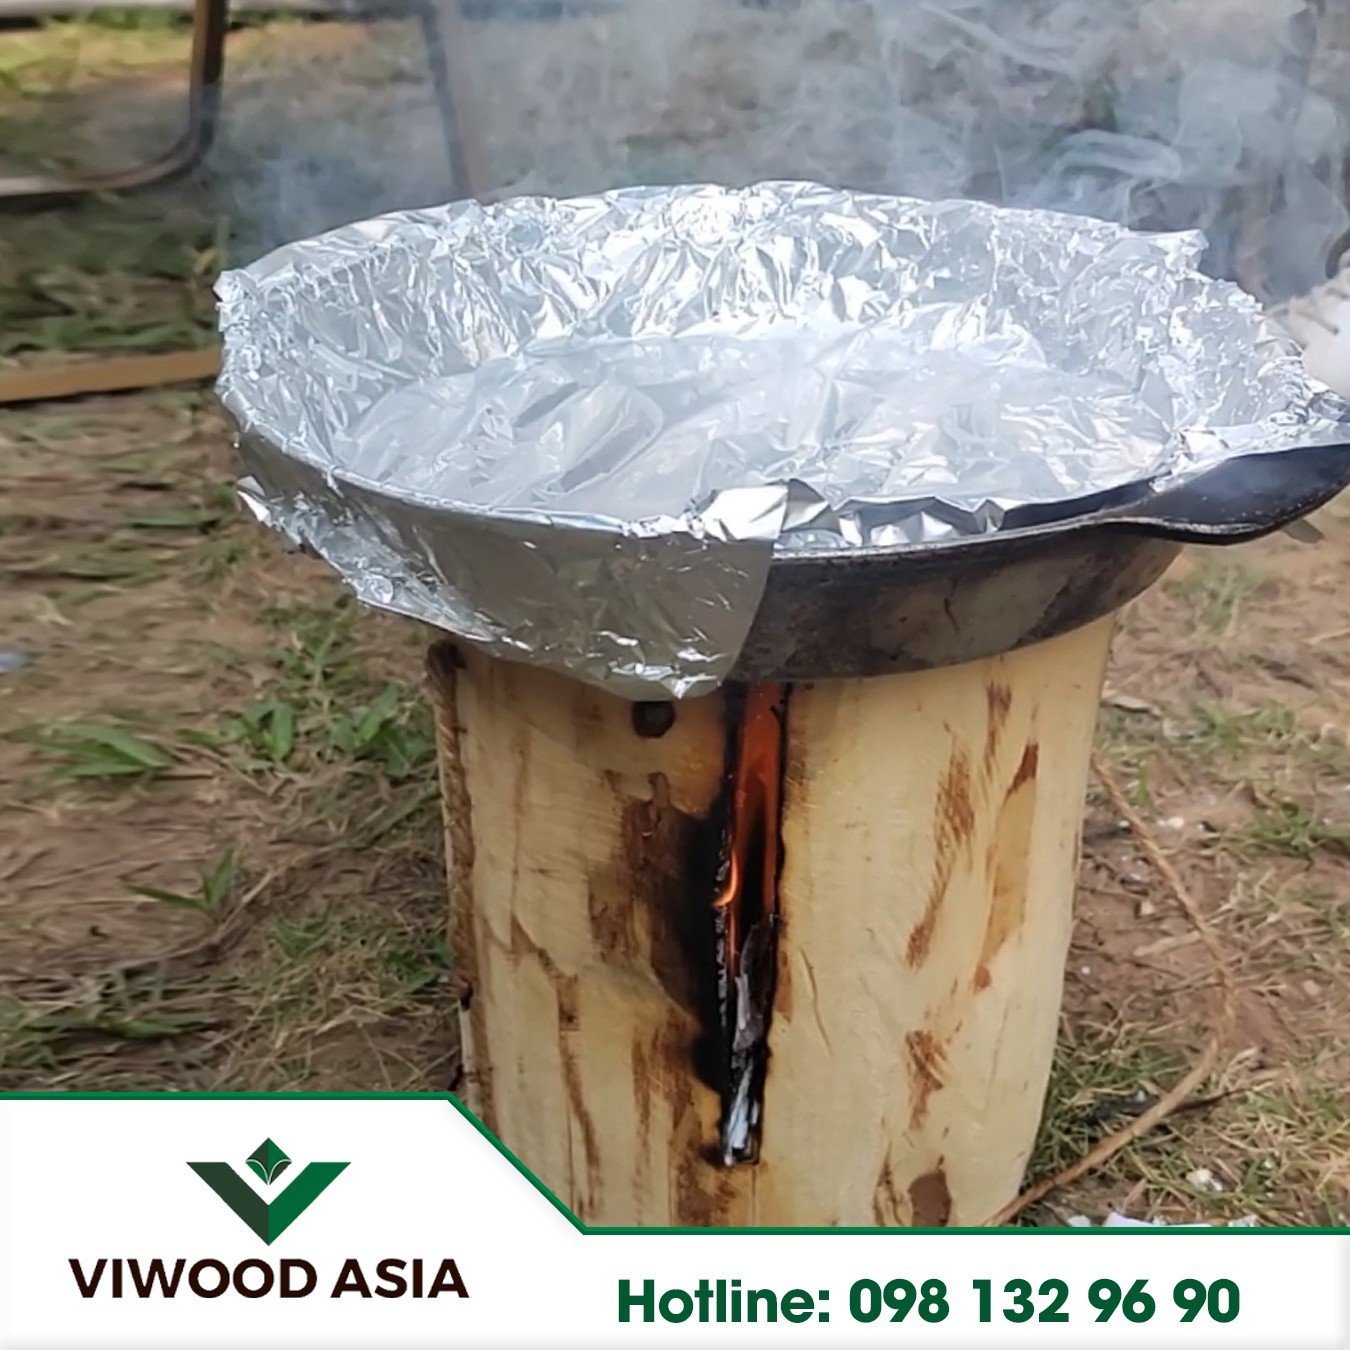 Củi đuốc - Củi dã ngoại cắm trại Viwood Asia, củi nhẹ, dễ mang đi, an toàn